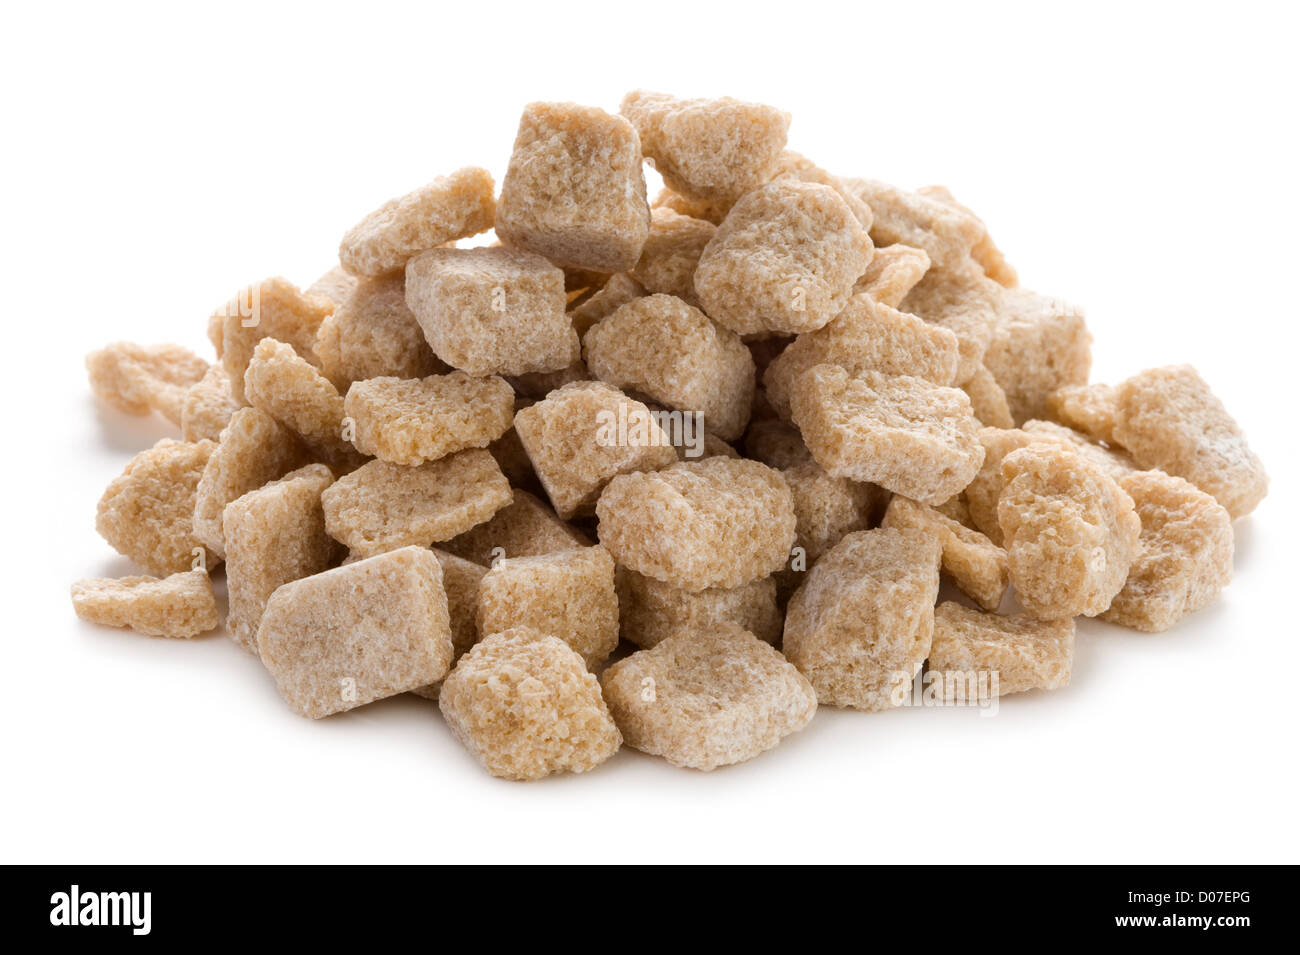 Rough cut brown di zucchero di canna grezzo Demerara cubetti isolati su sfondo bianco Foto Stock